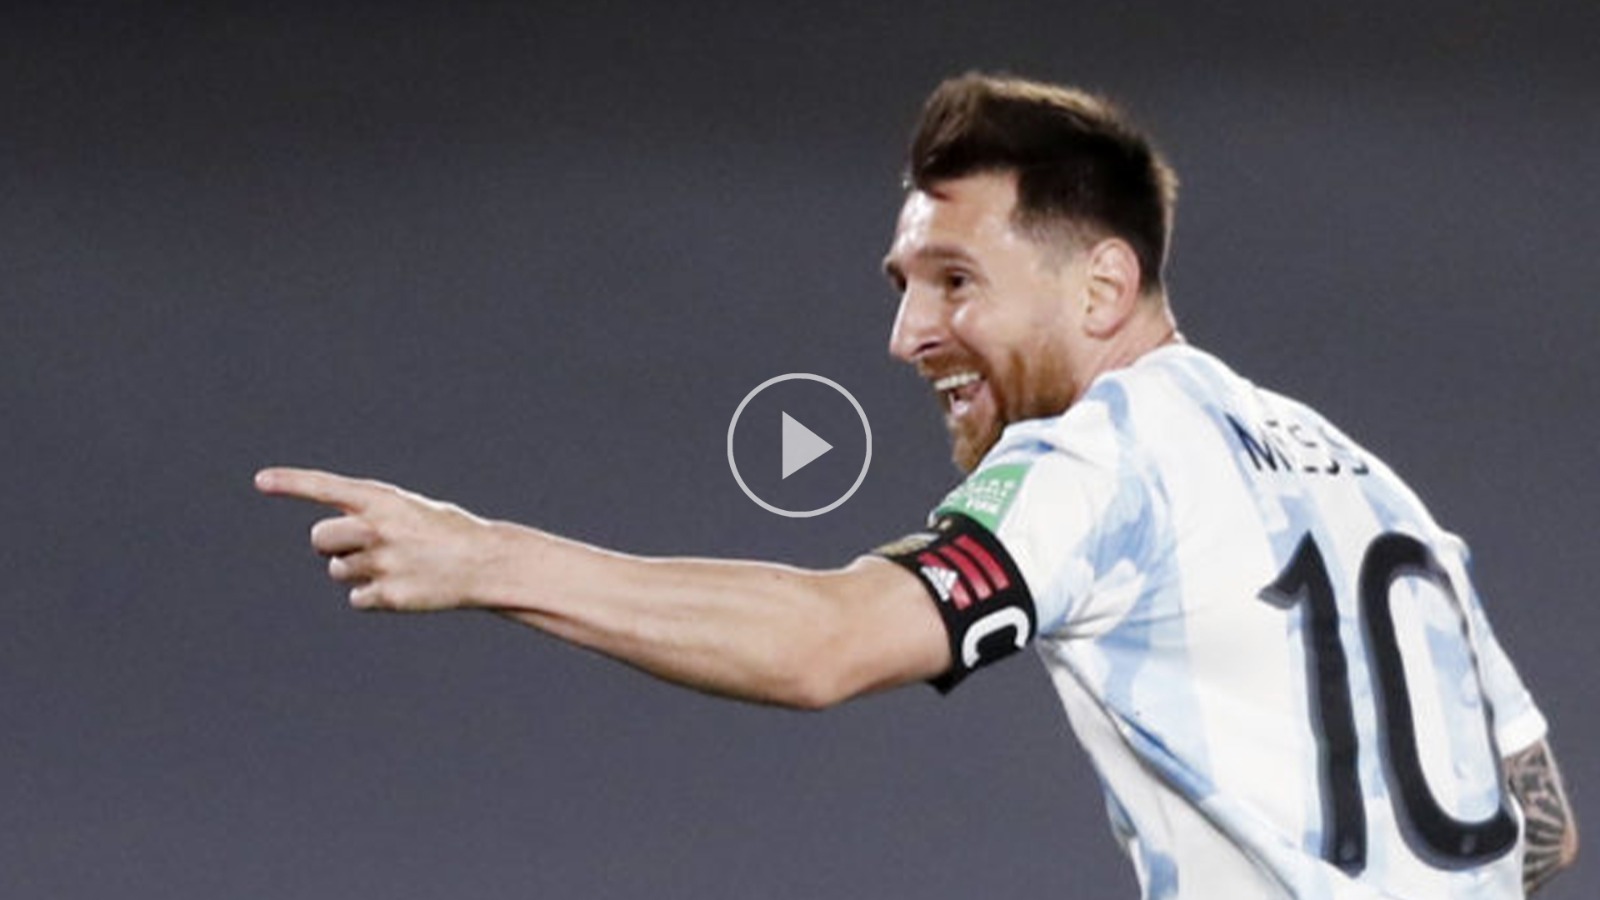  بالفيديو...ميسي يقود الأرجنتين للانتصار على الأوروغواي  في تصفيات أميركا الجنوبية لمونديال قطر